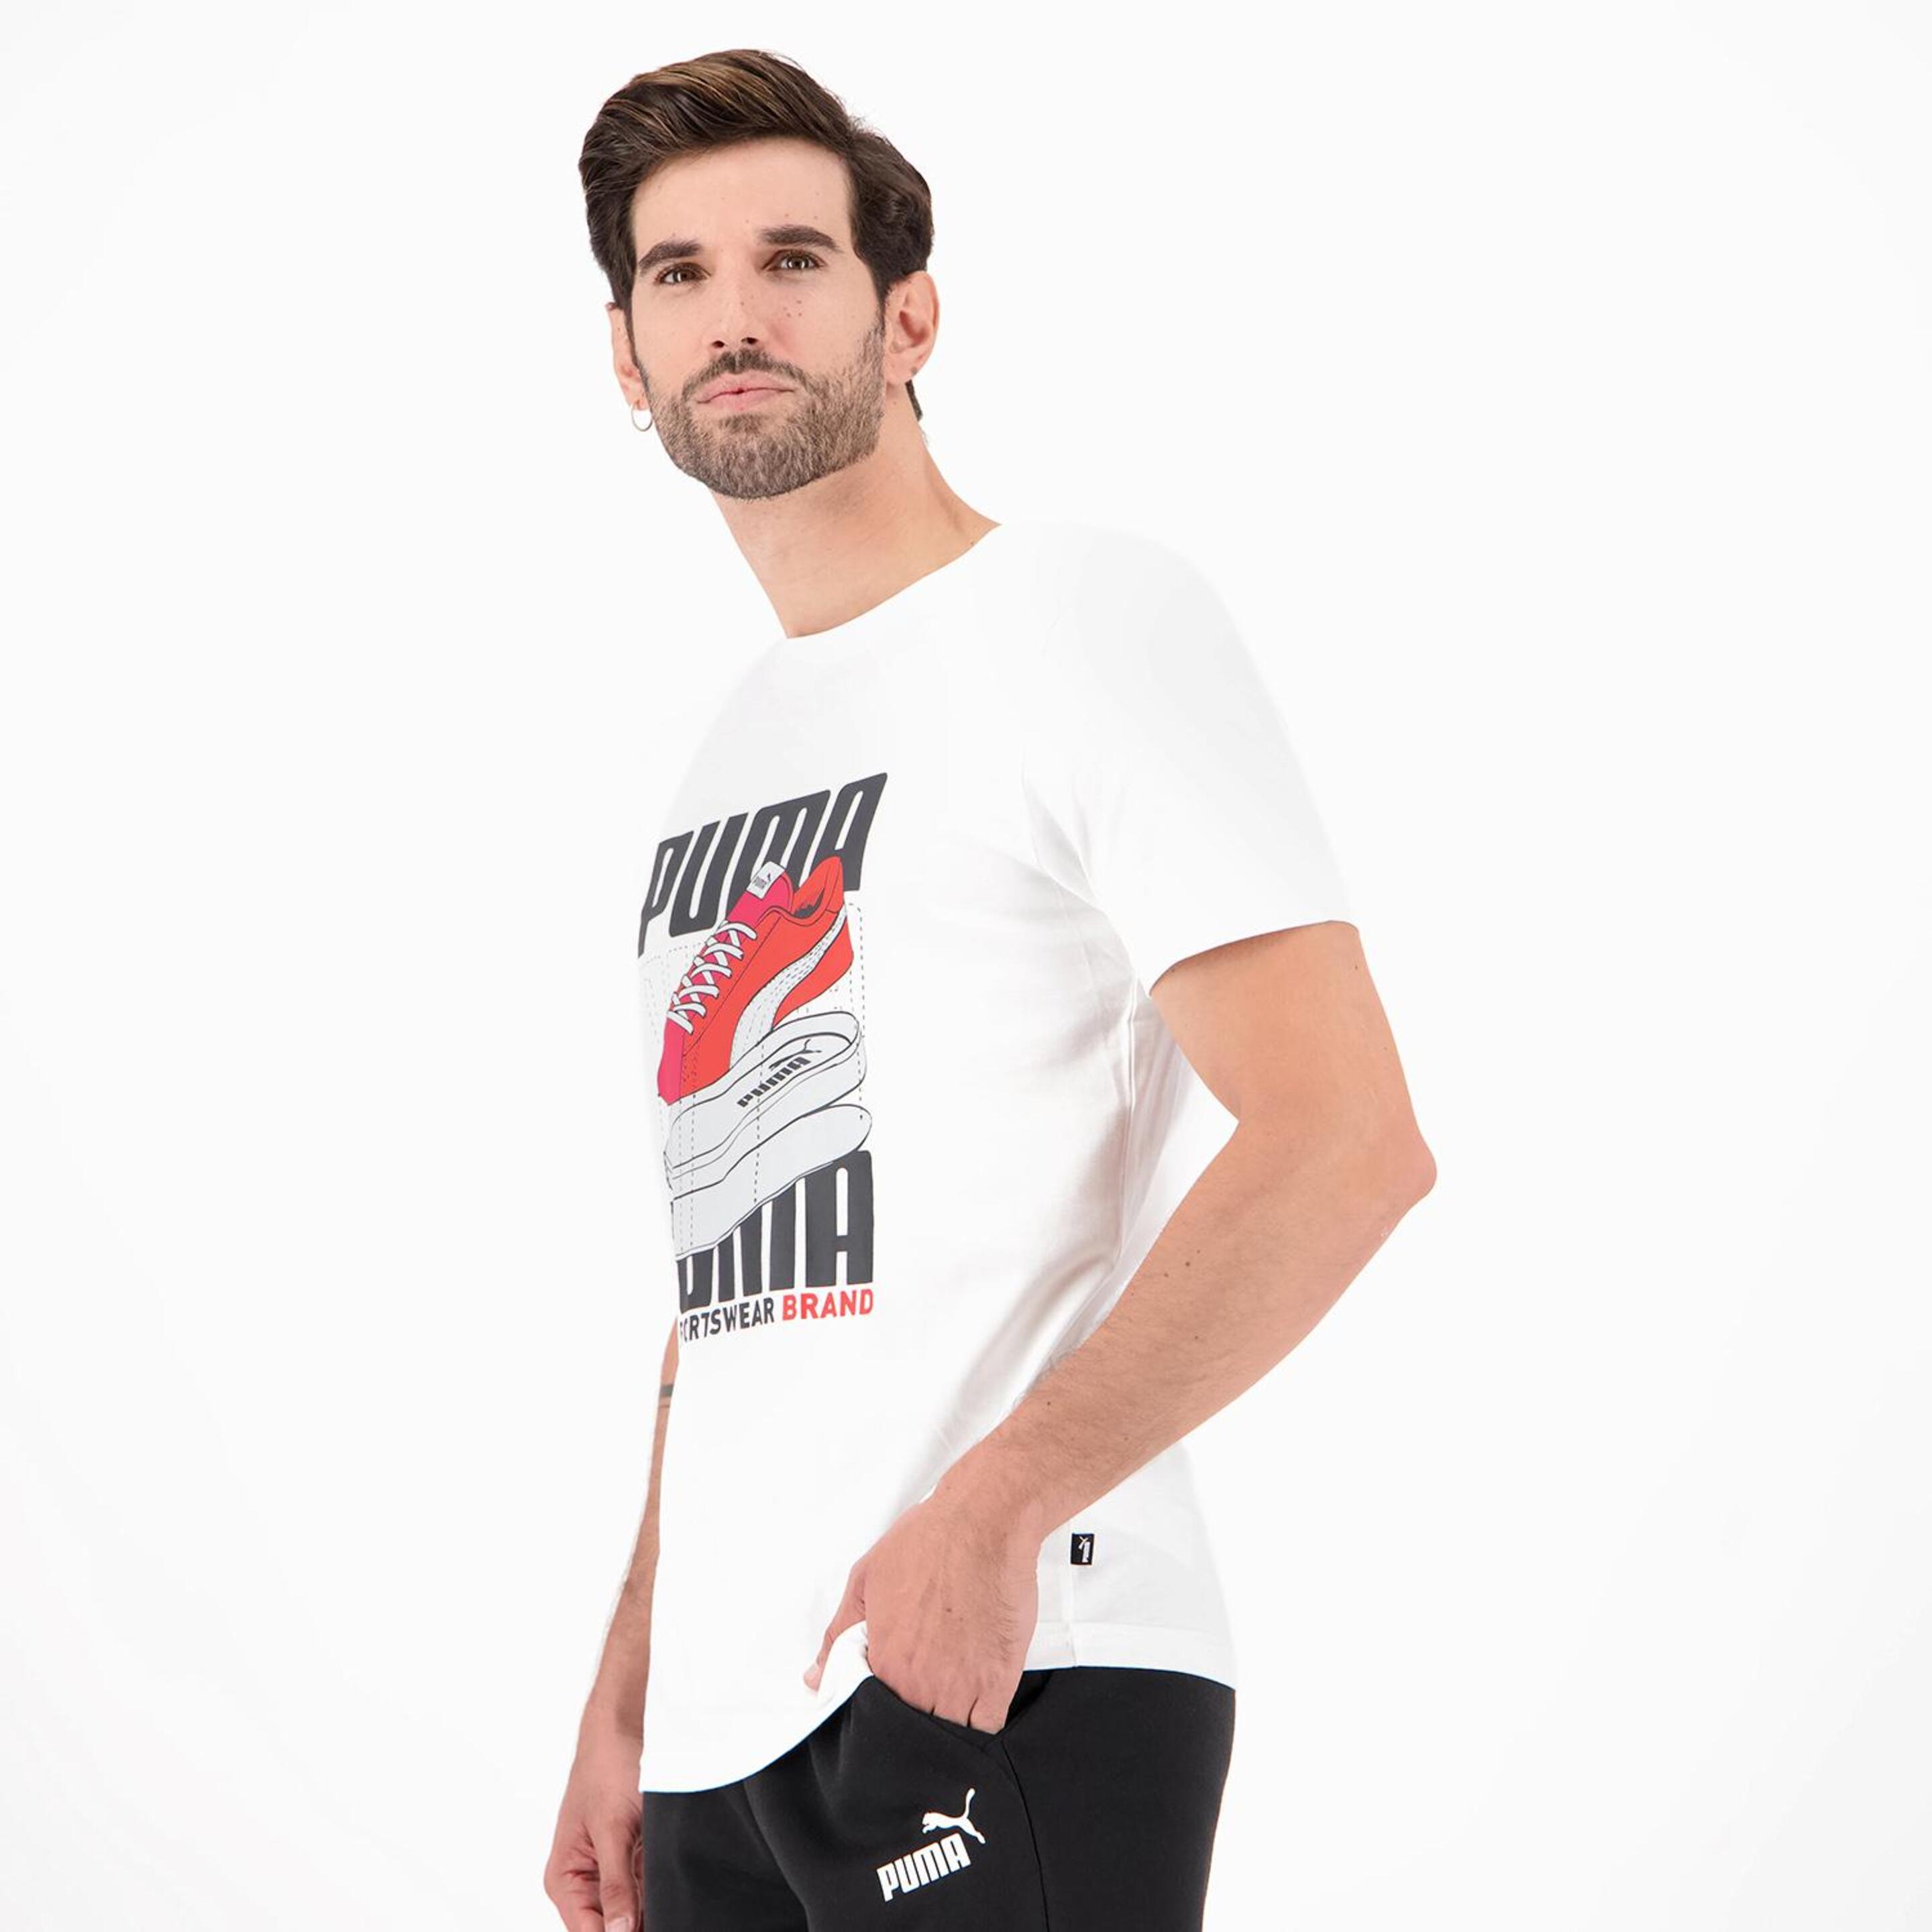 Puma Grafica - Blanco - Camiseta Hombre  | Sprinter | Sprinter